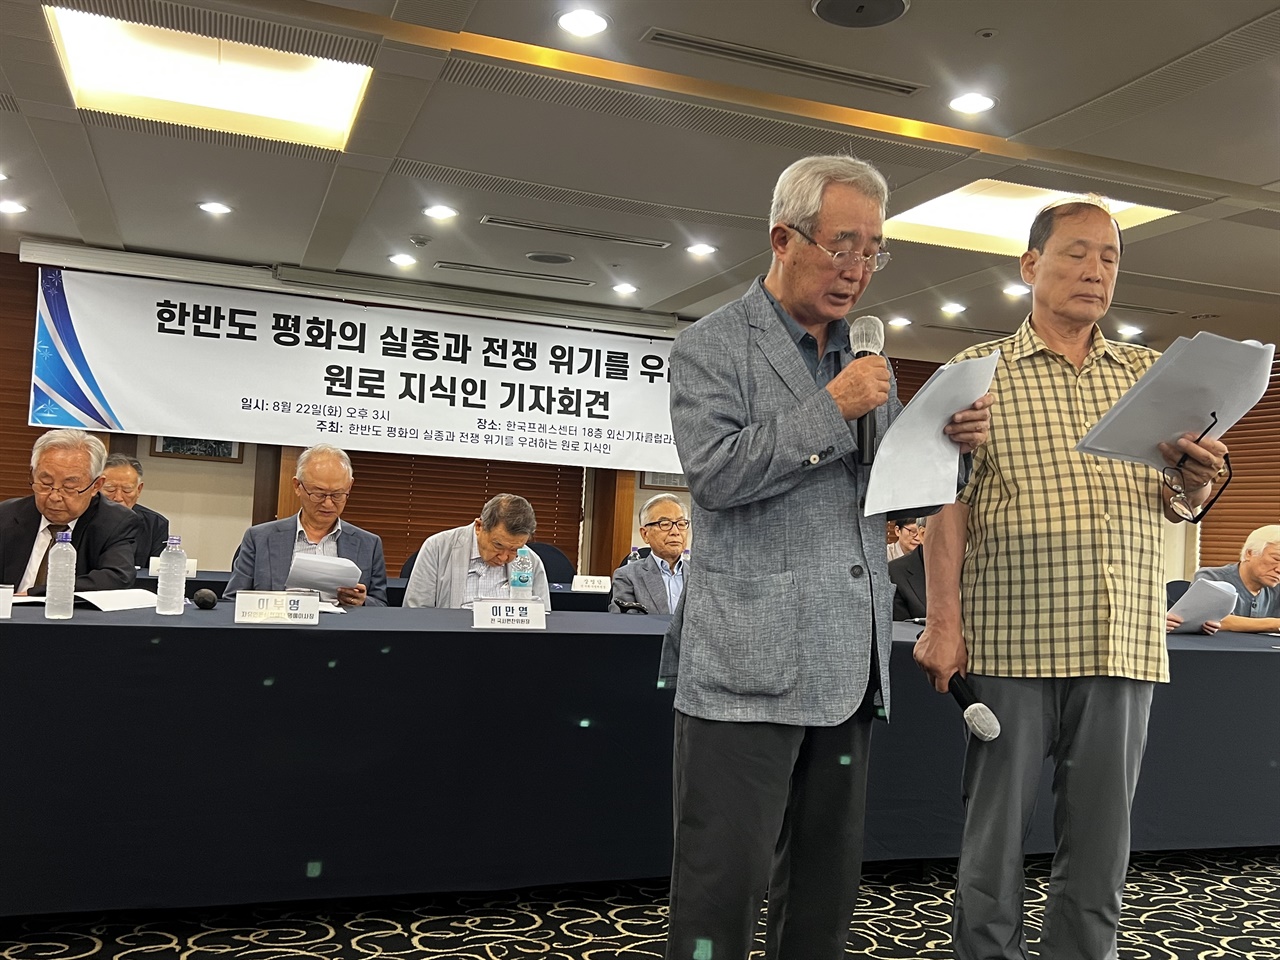 장영달 전 국회 국방위원장과 강정채 전 전남대 총장이 성명서를 나눠 낭독했다. 